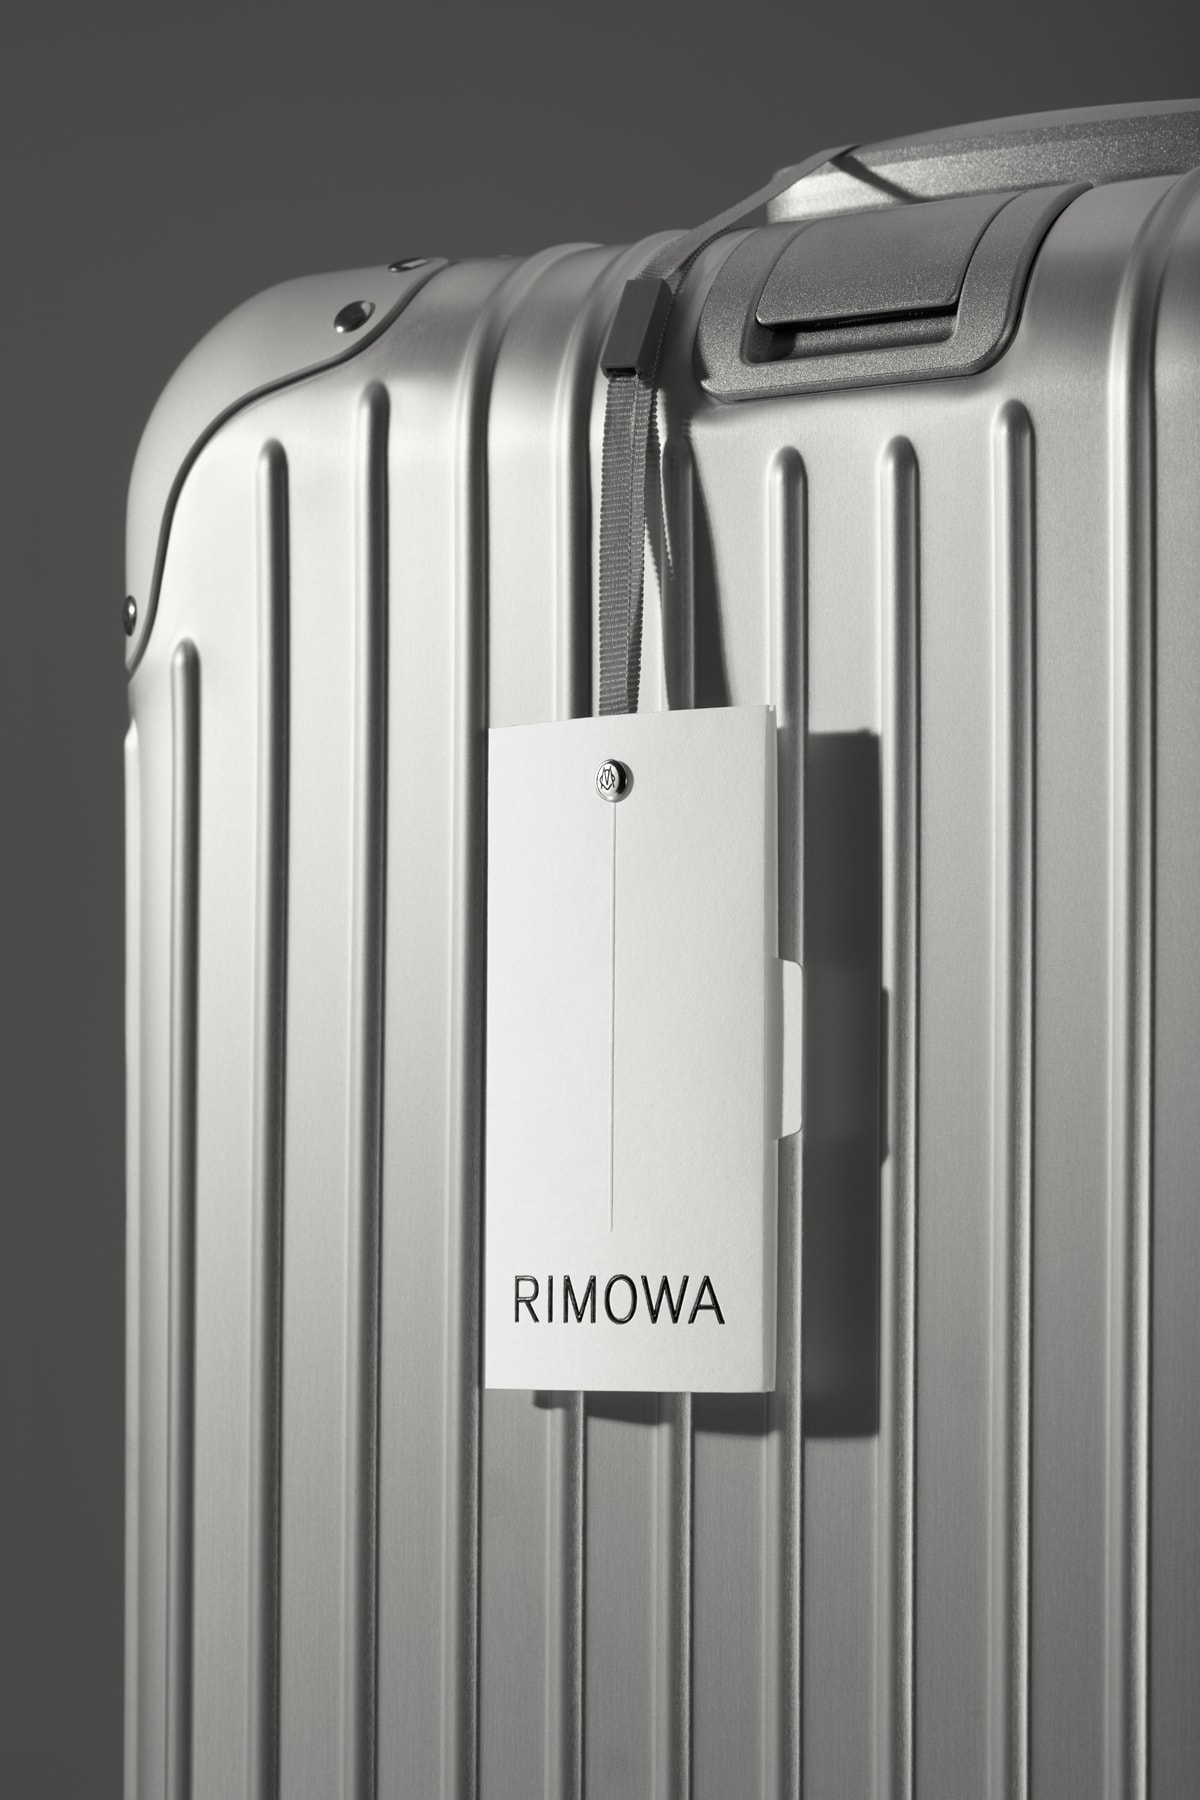 120 周年迎新－RIMOWA 更換全新品牌形象